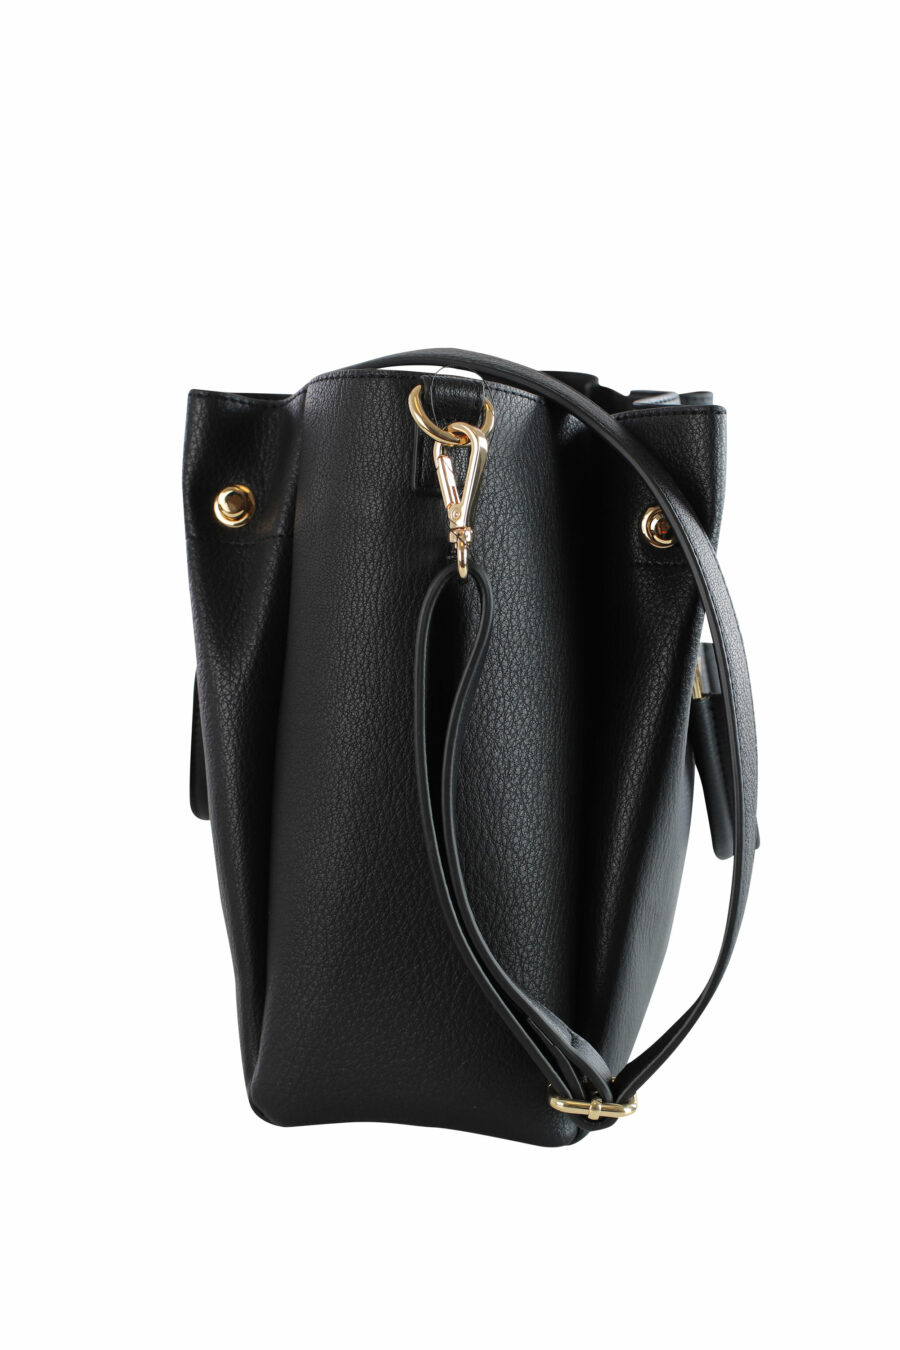 Black shoulder bag with heart mini logo - IMG 3609